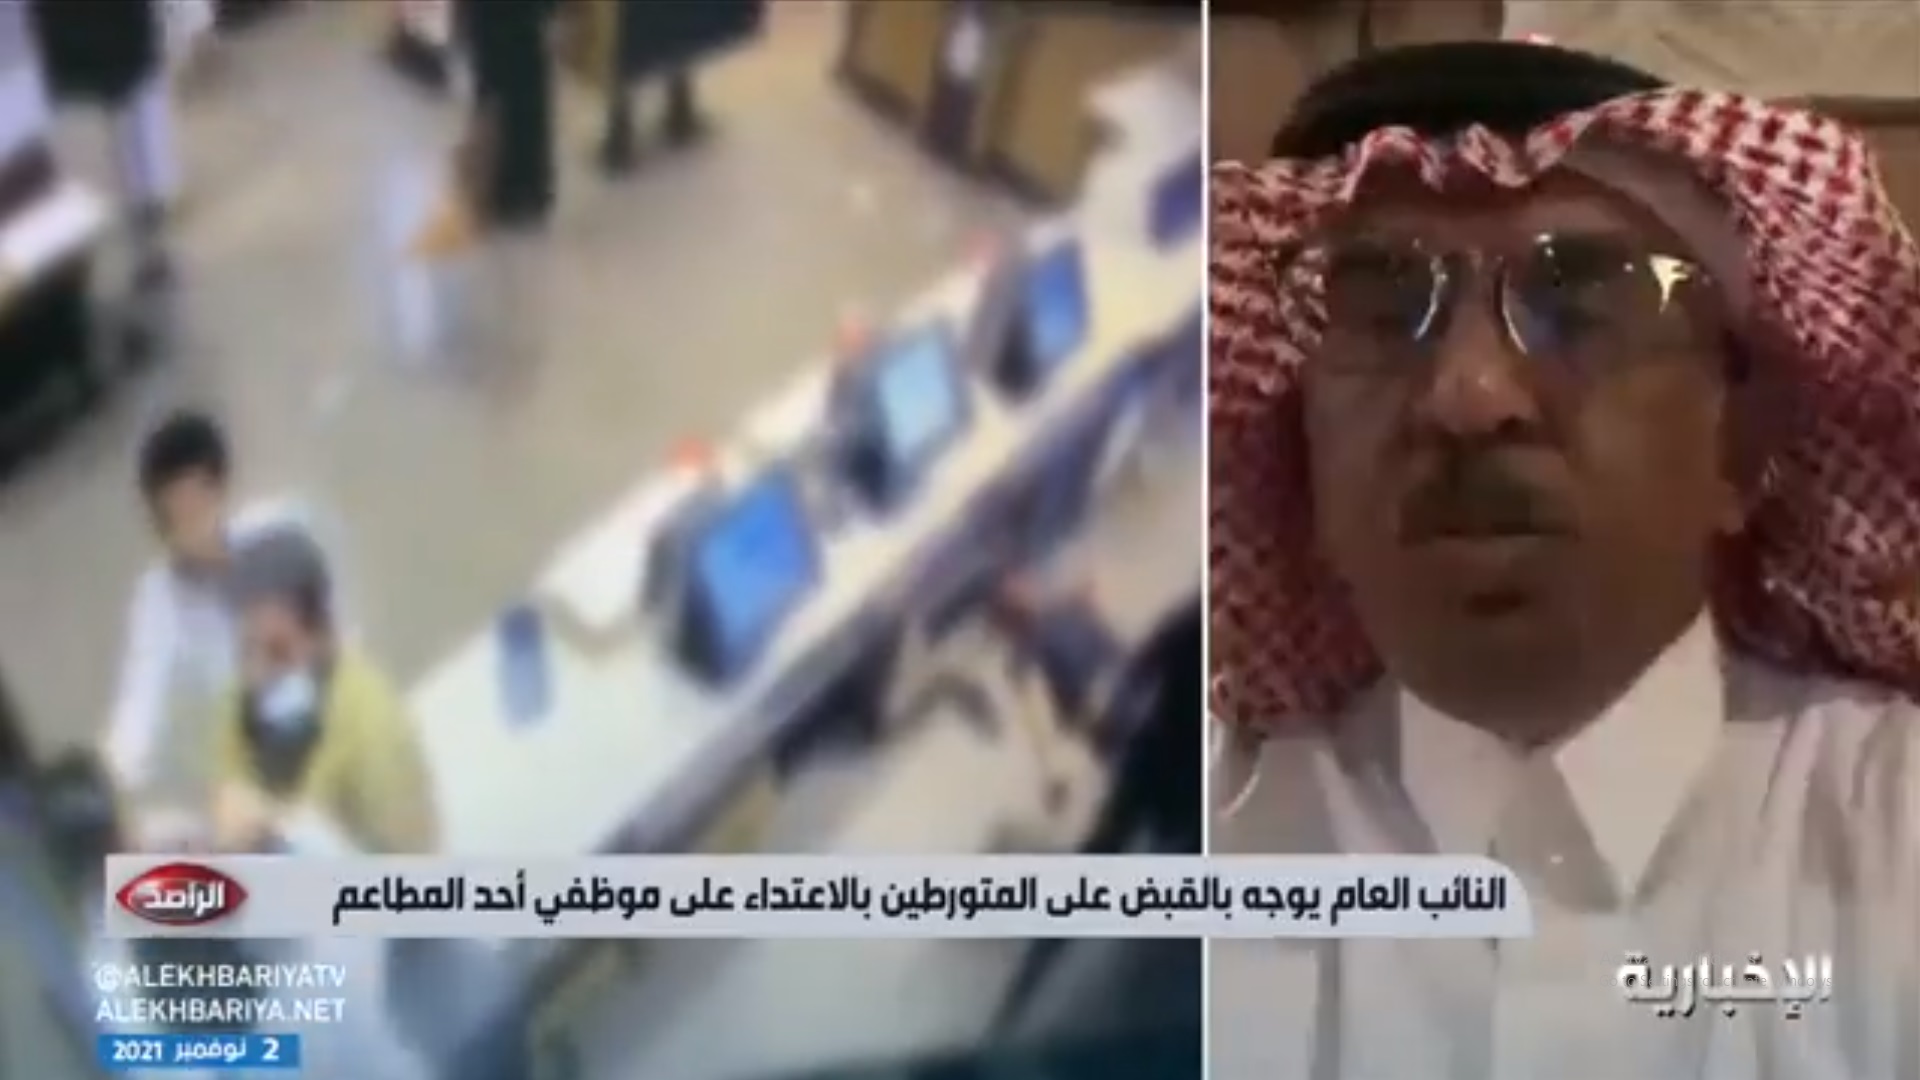 صورة عقوبات متوقعة بحق المعتدين على عامل مطعم الرياض